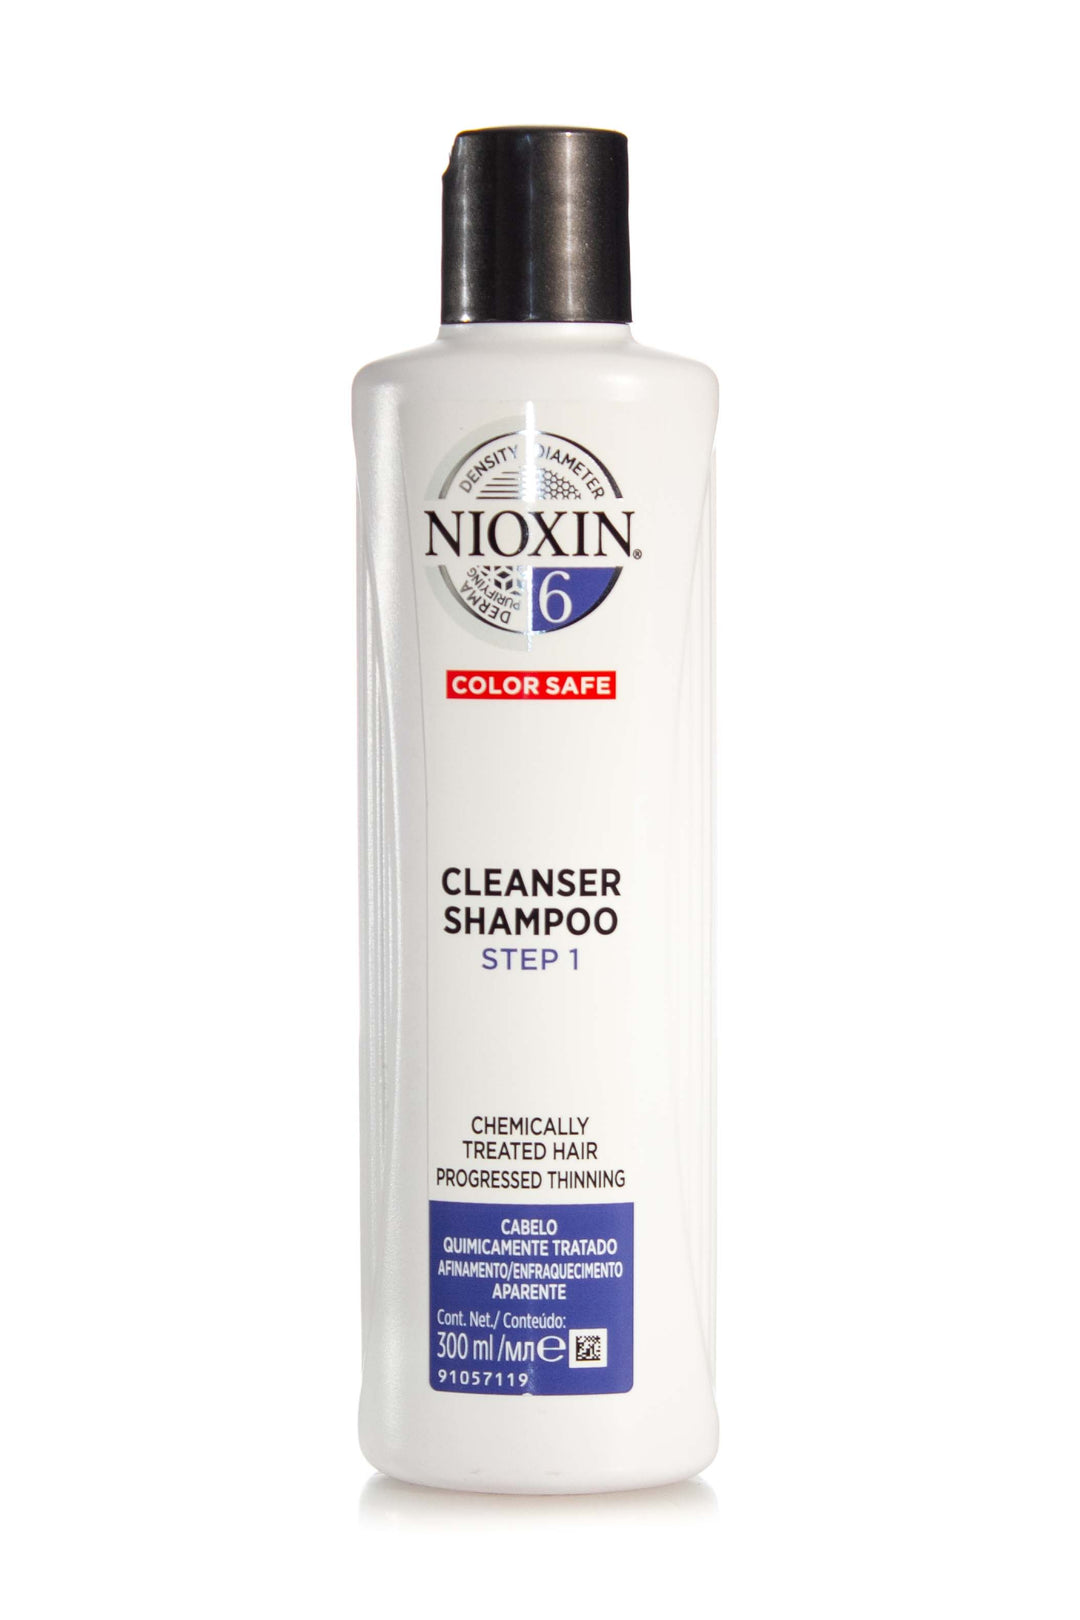 NIOXIN SYSTEM 6 CLEANSER SHAMPOO 300ML